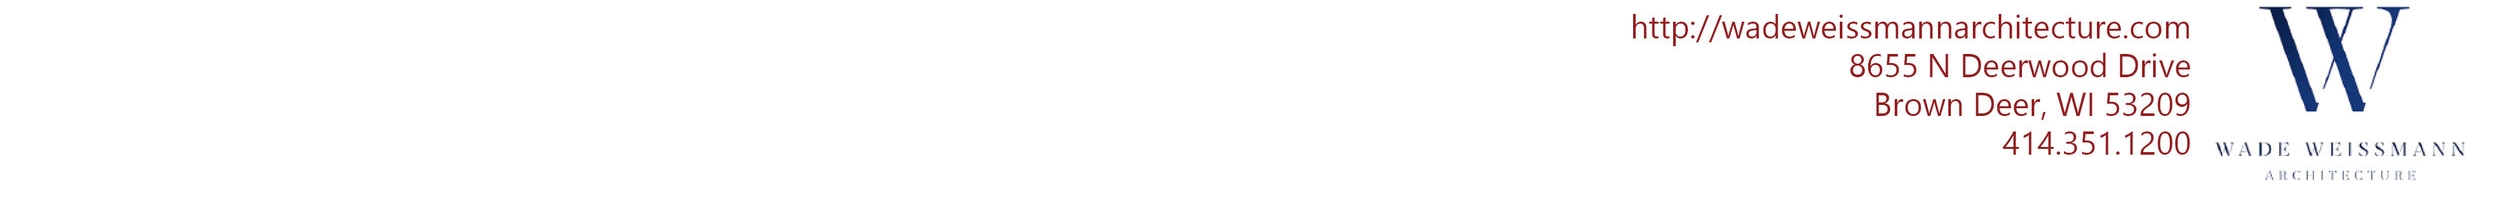 塞萨尔·罗哈斯的横幅.jpg